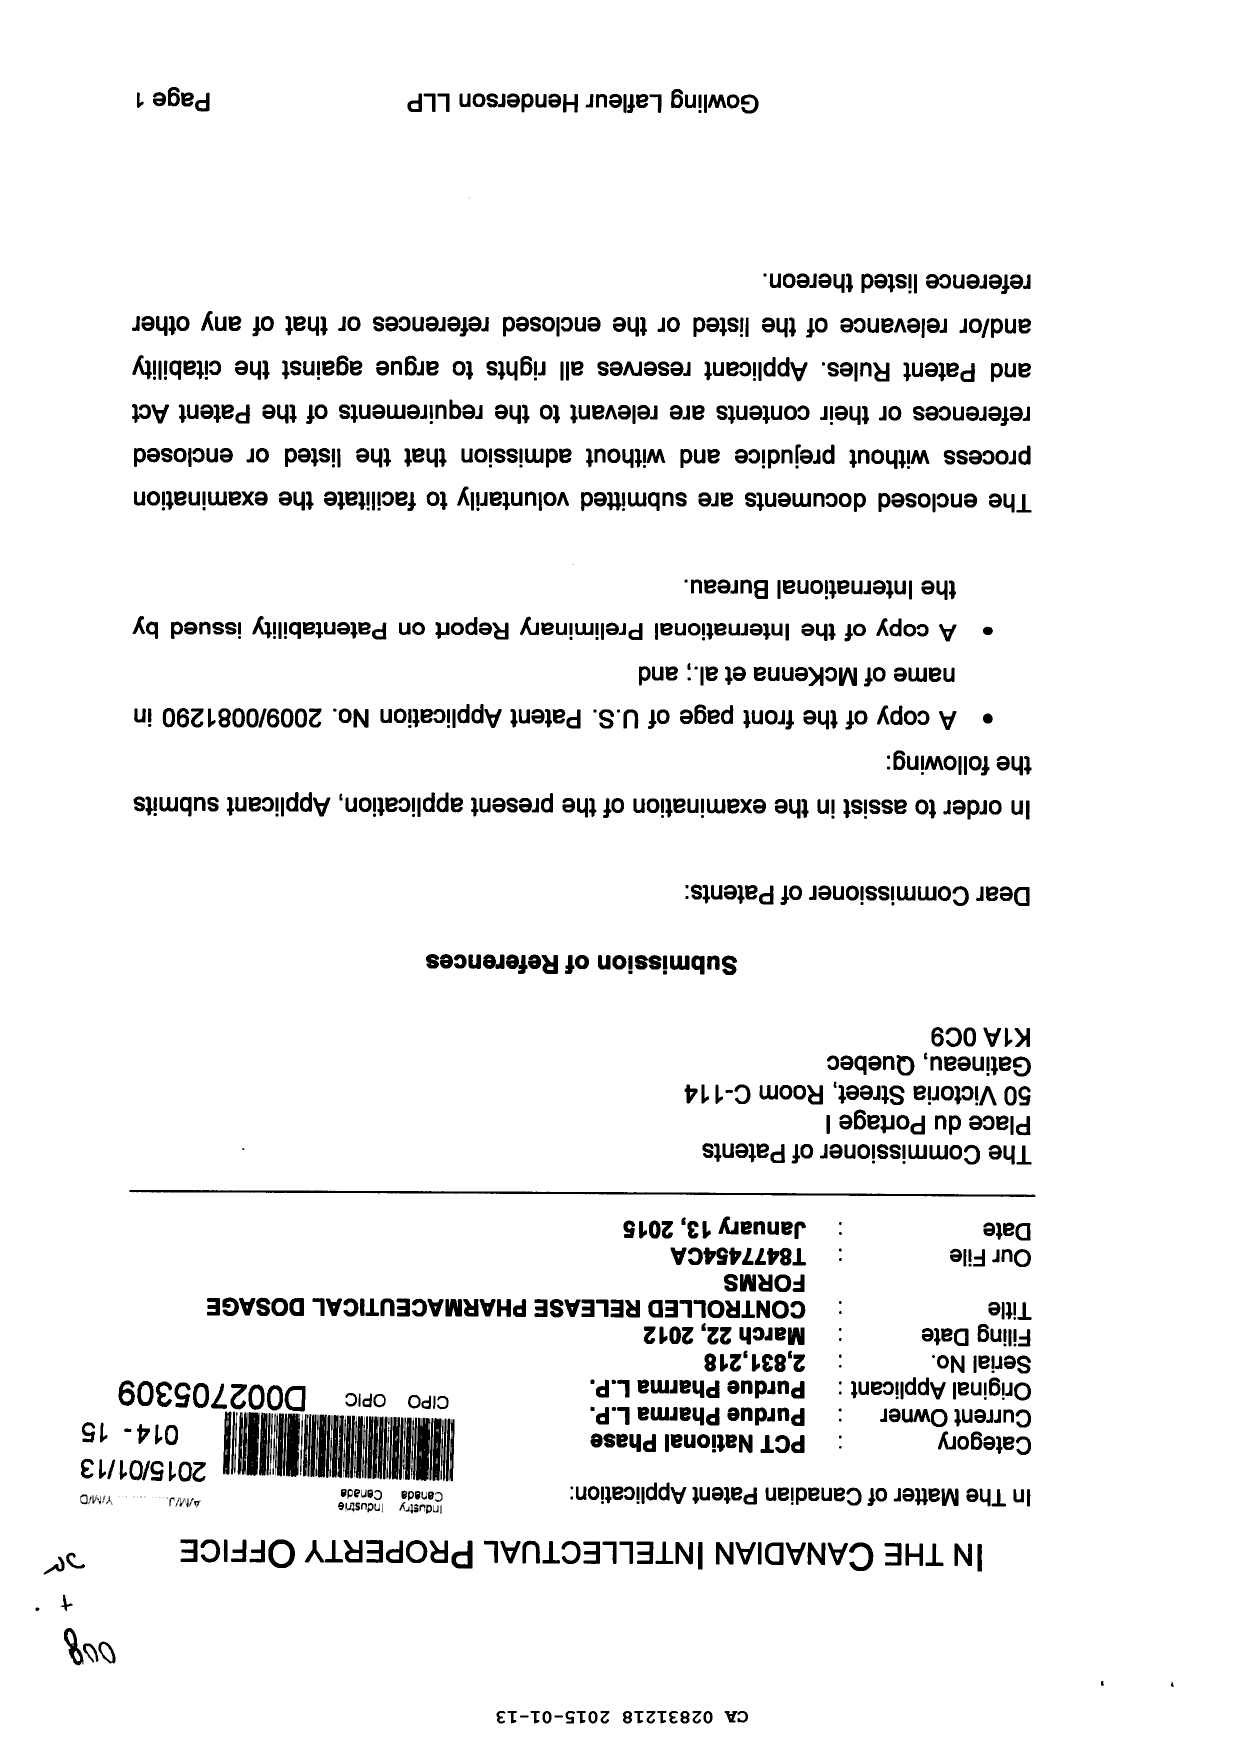 Document de brevet canadien 2831218. Poursuite-Amendment 20141213. Image 1 de 2